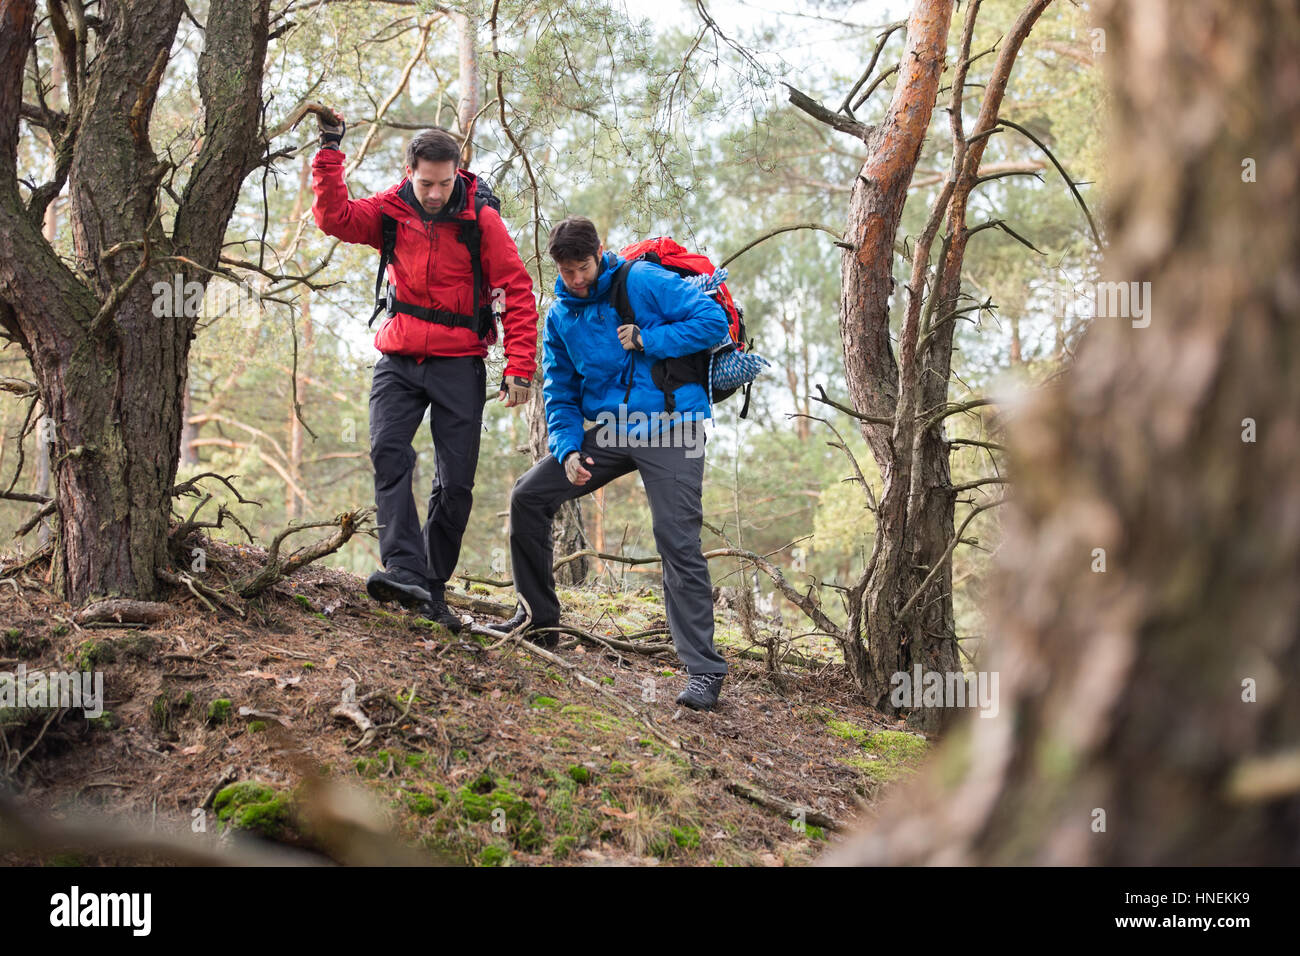 Männliche Rucksacktouristen Wandern im Wald Stockfoto